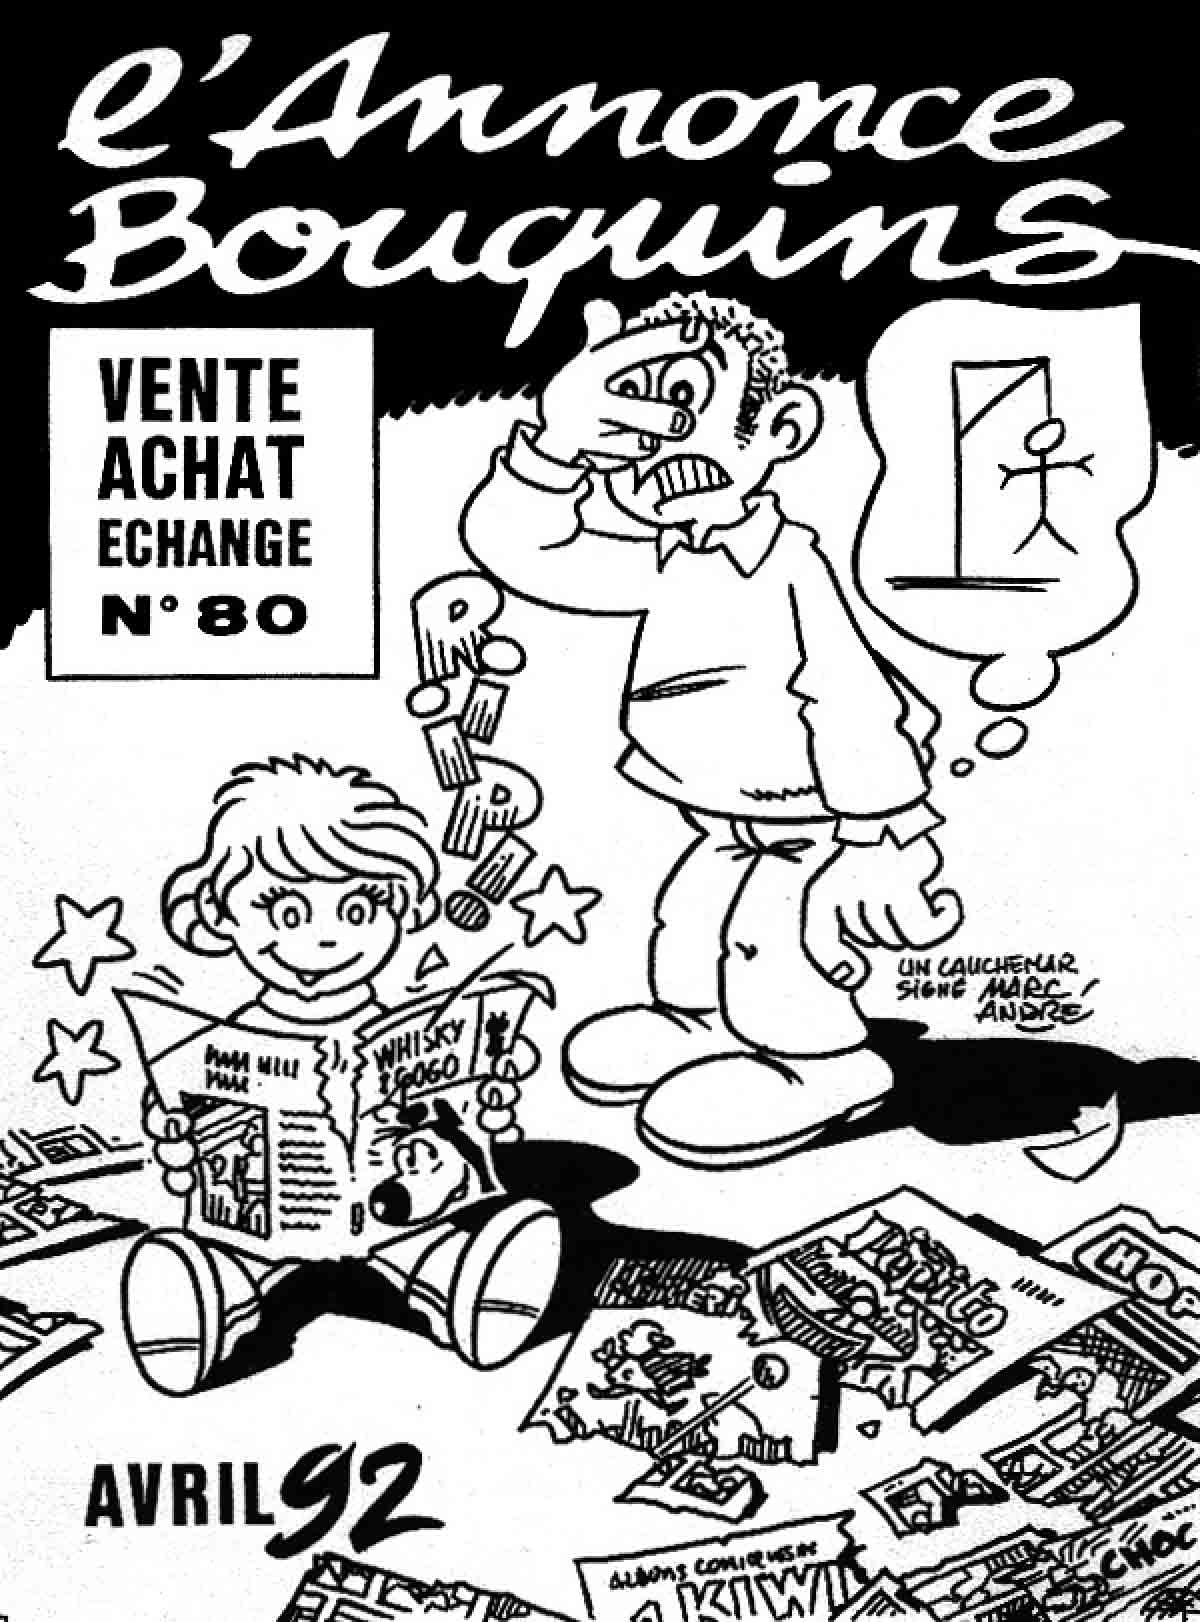 L'annonce-Bouquins 80 - avril 1992 - par Marc-André - 1992-1995 - Bande dessinée - Libourne - Marc-André BD Illustration Graphisme - Limoges